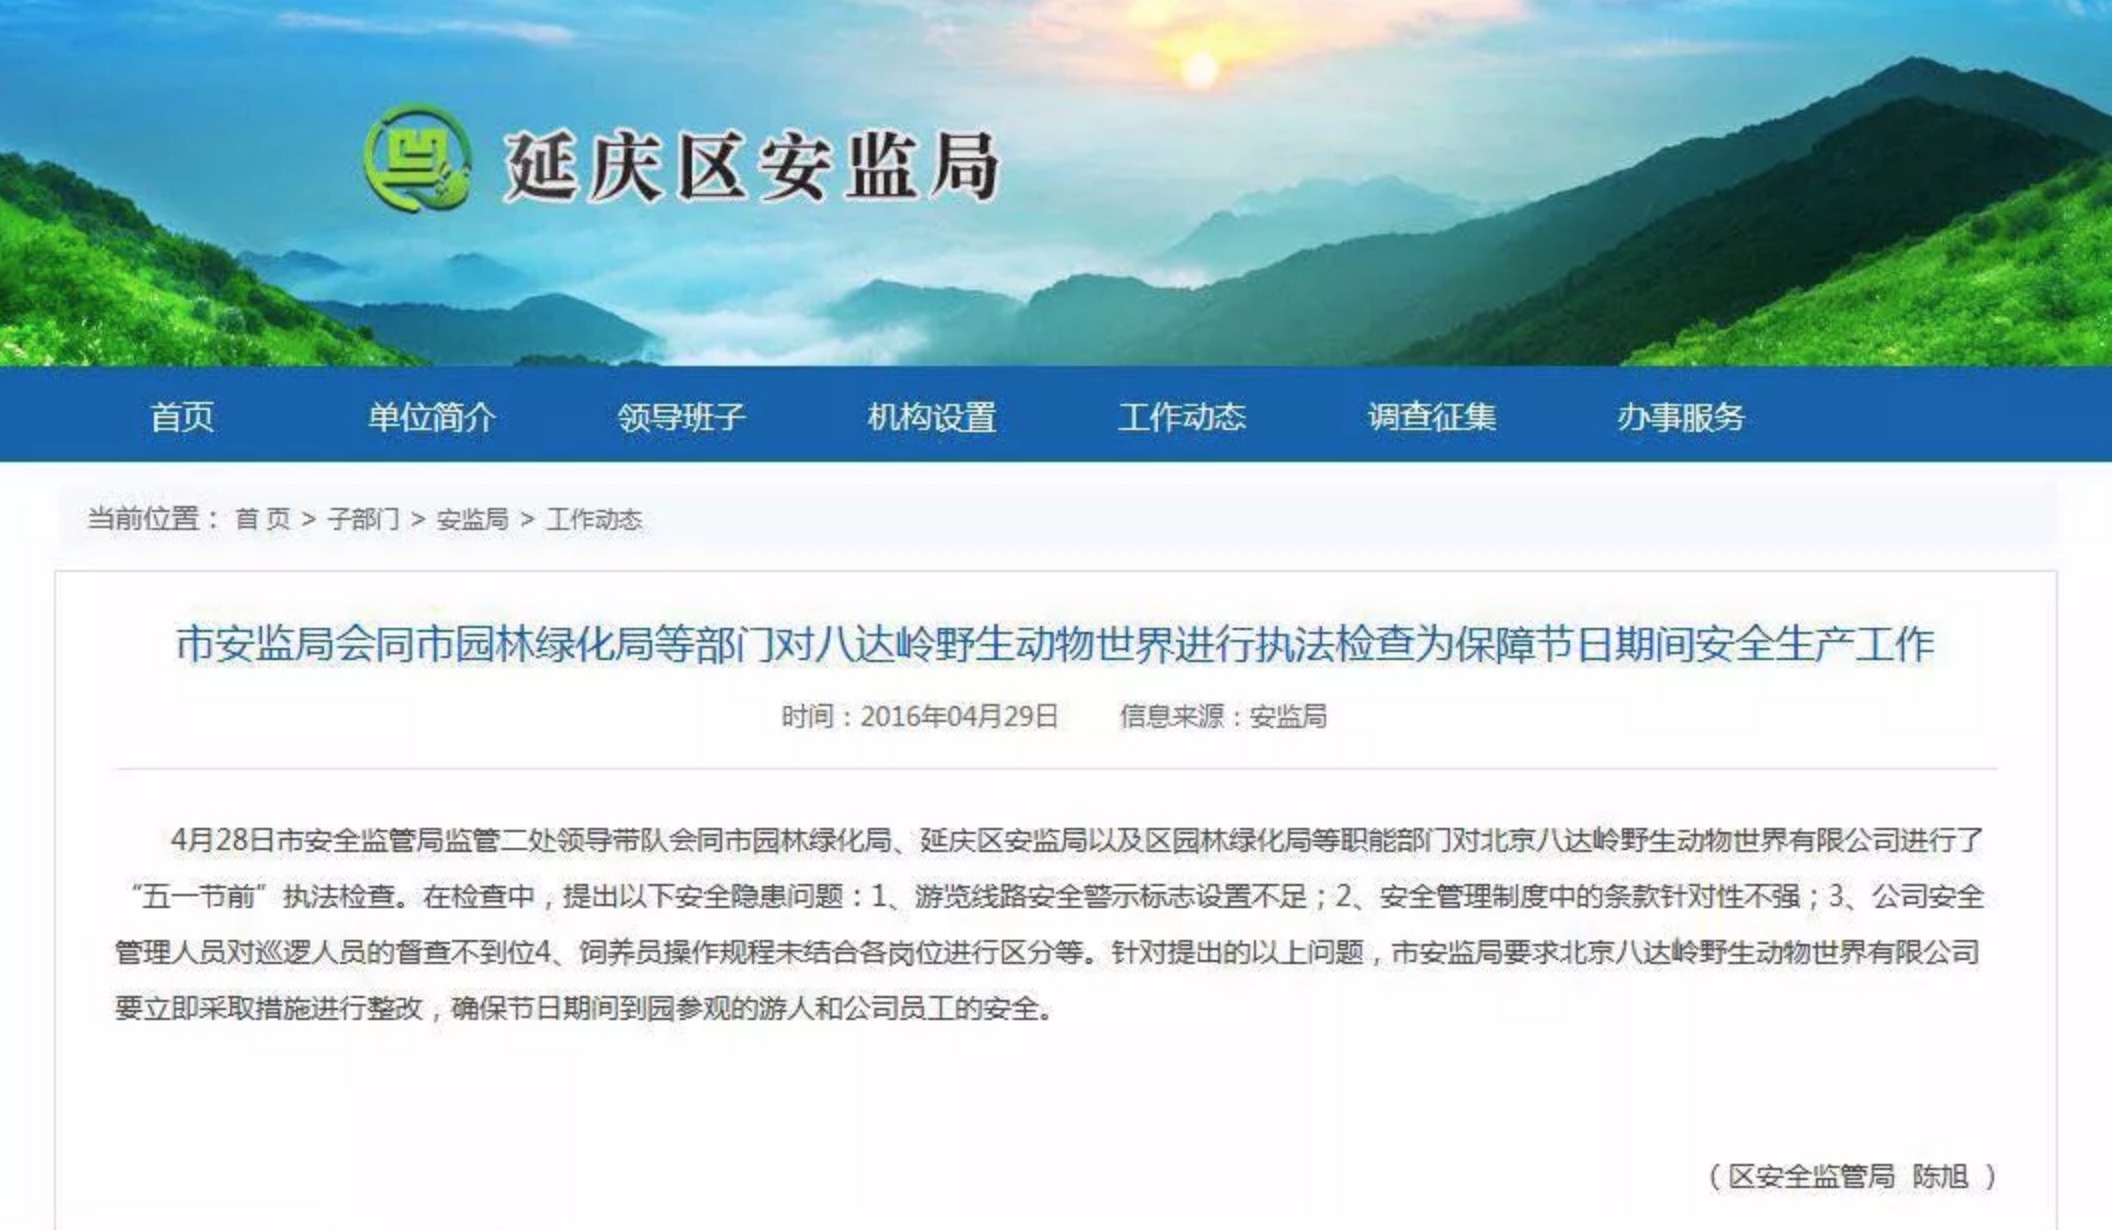 延庆安监局曾在事发3月前检查出该野生动物园的安全隐患